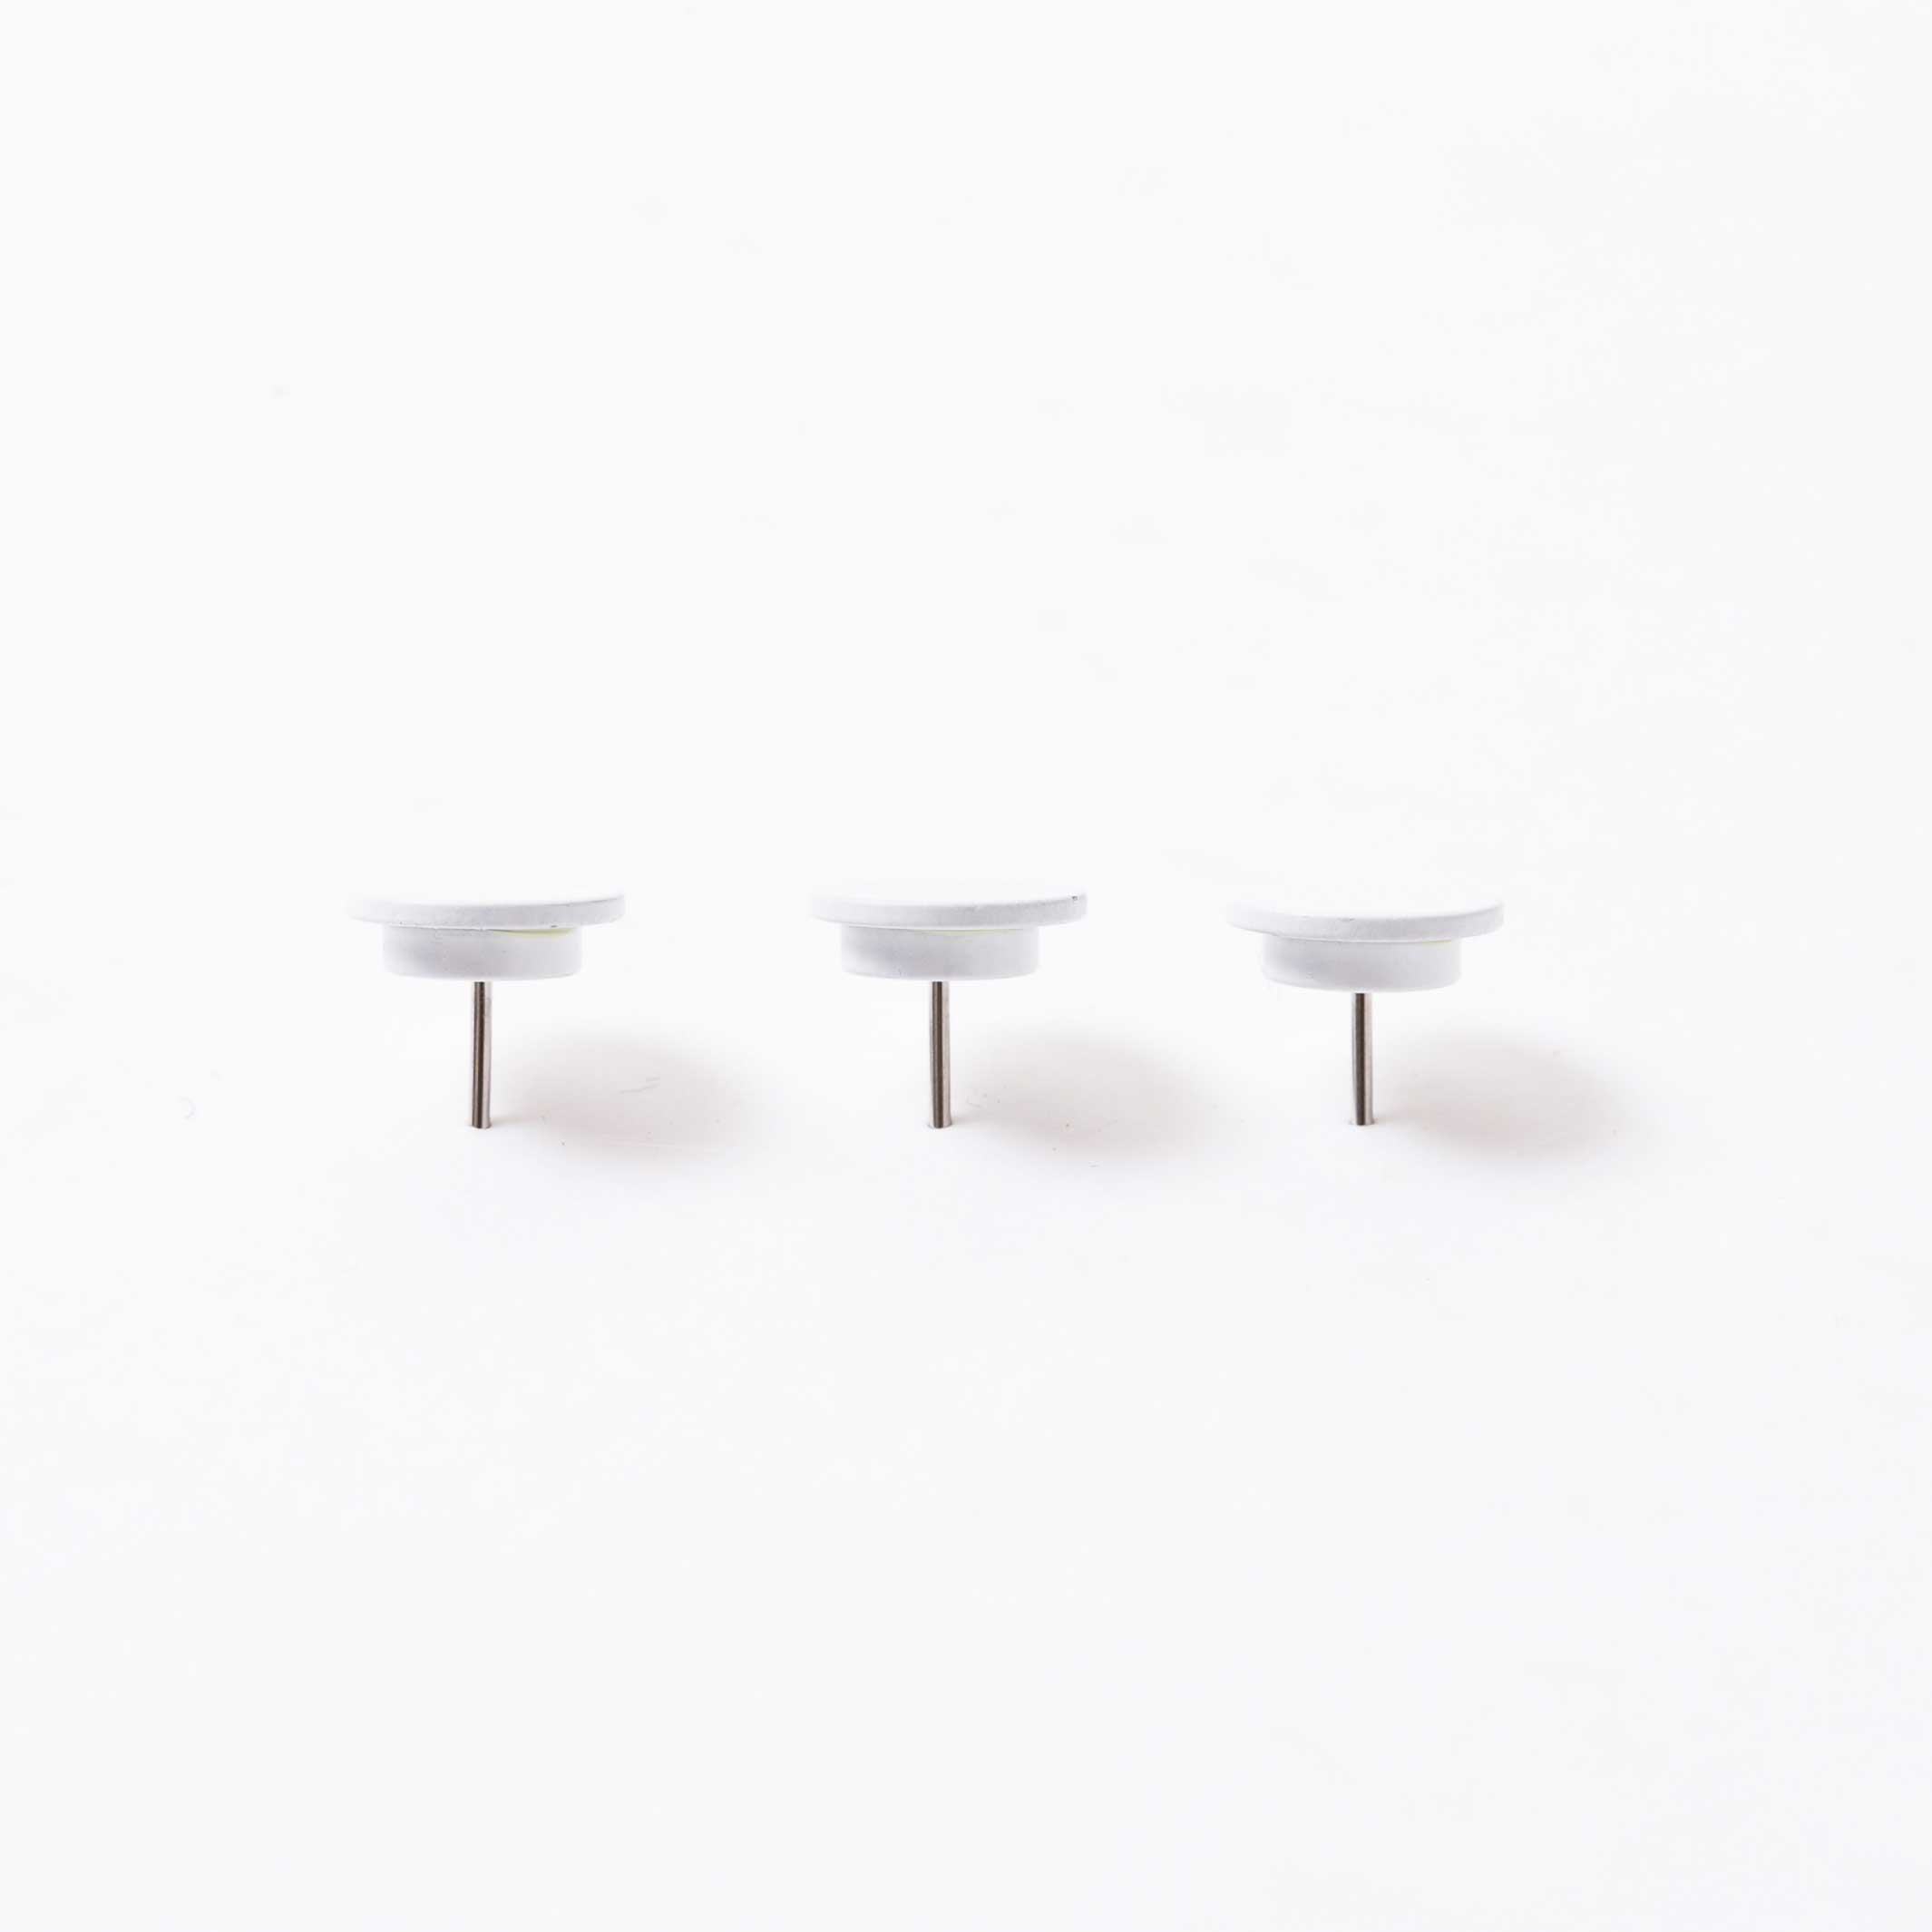 MAGNET TACK Weiss | 3er Set magnetische PIN-REISSZWECKEN | Kosho Tsuboi | 100percent